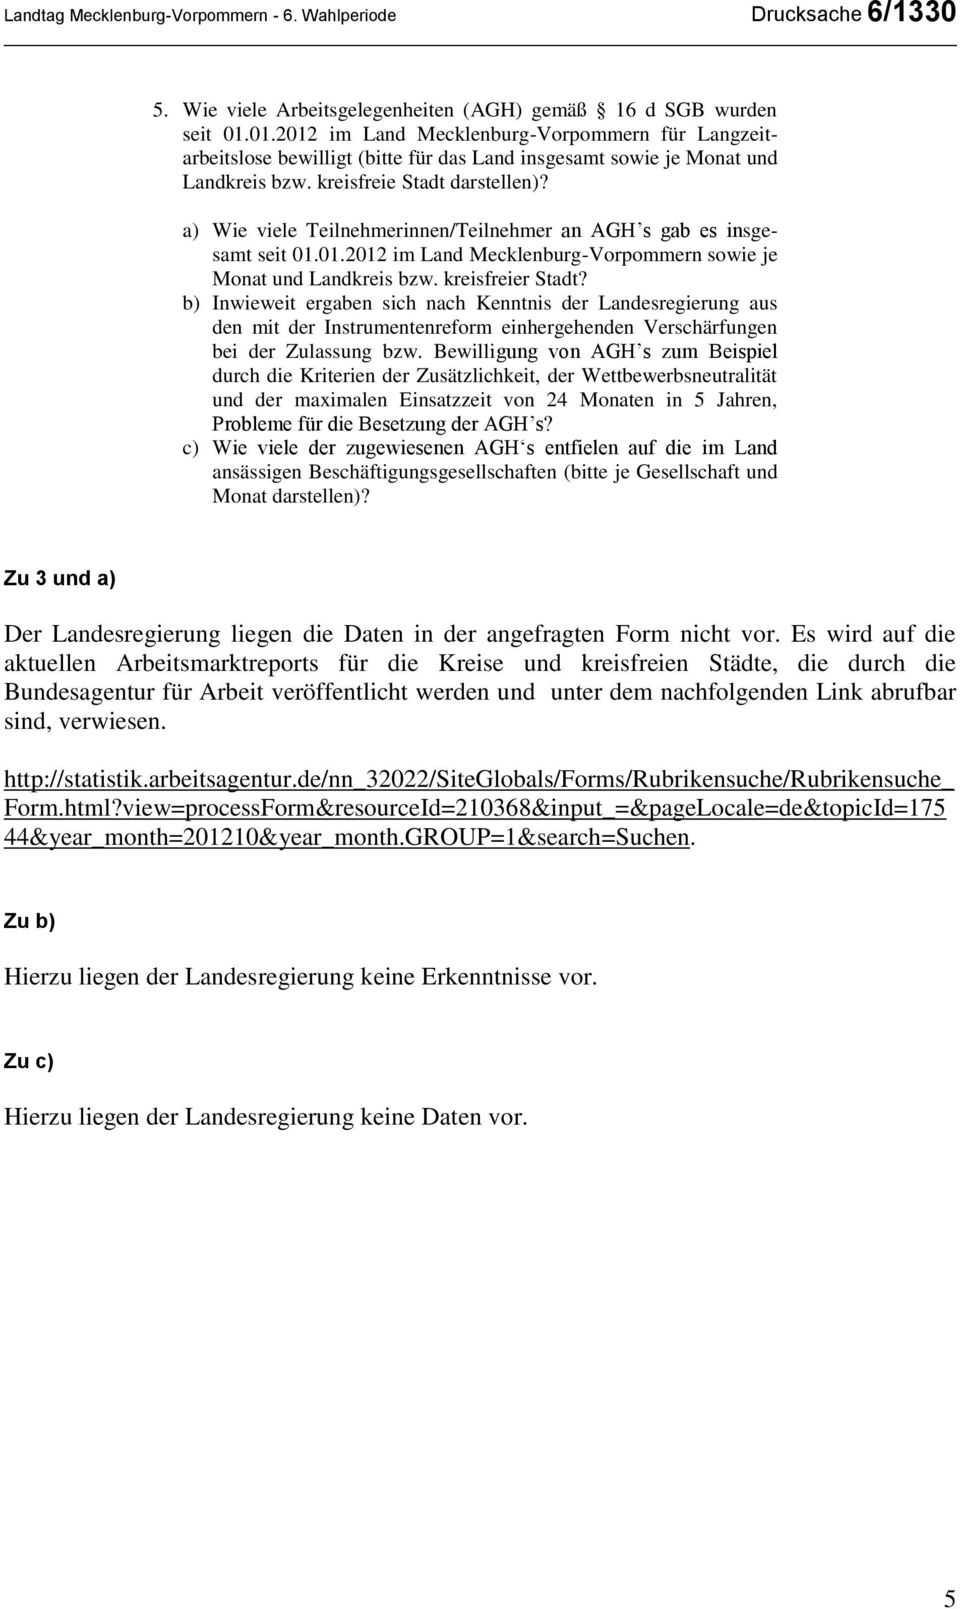 a) Wie viele Teilnehmerinnen/Teilnehmer an AGH s gab es insgesamt seit 01.01.2012 im Land Mecklenburg-Vorpommern sowie je Monat und Landkreis bzw. kreisfreier Stadt?